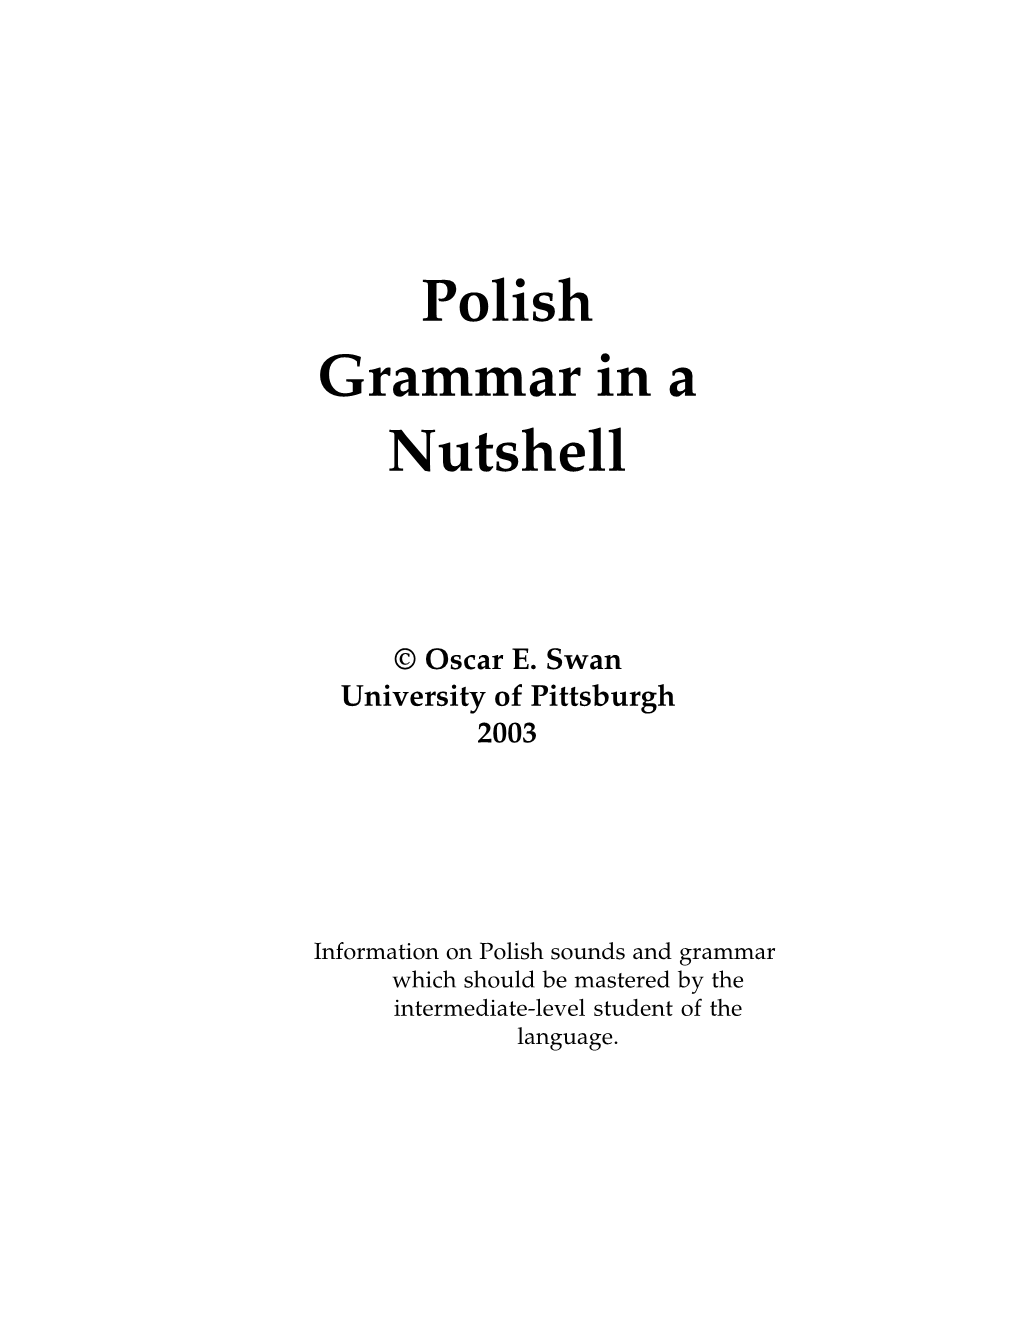 Polish Grammar in a Nutshell